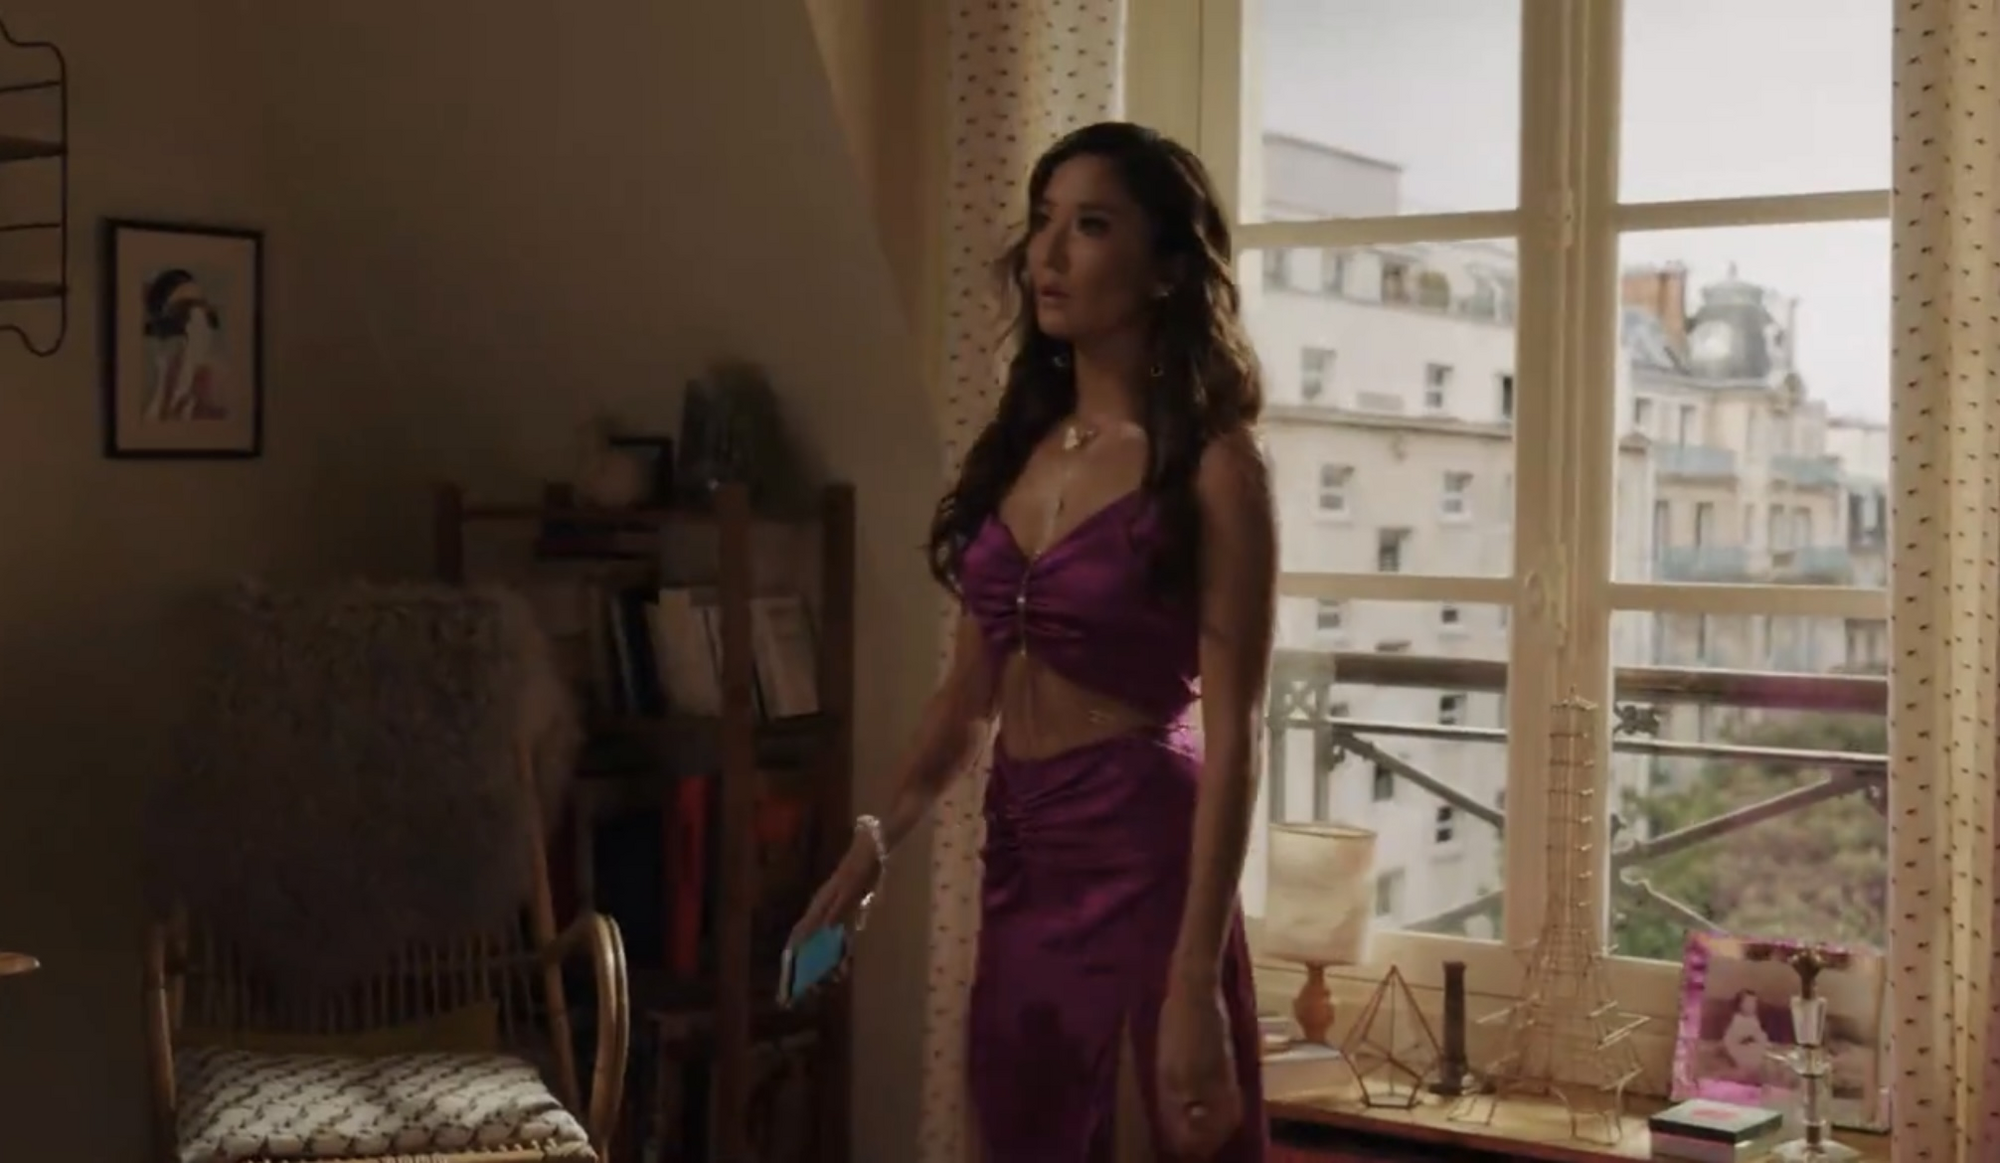 В новом сезоне сериала "Эмили в Париже" от Netflix одна из героинь появилась в платье от украинского бренда. Видео